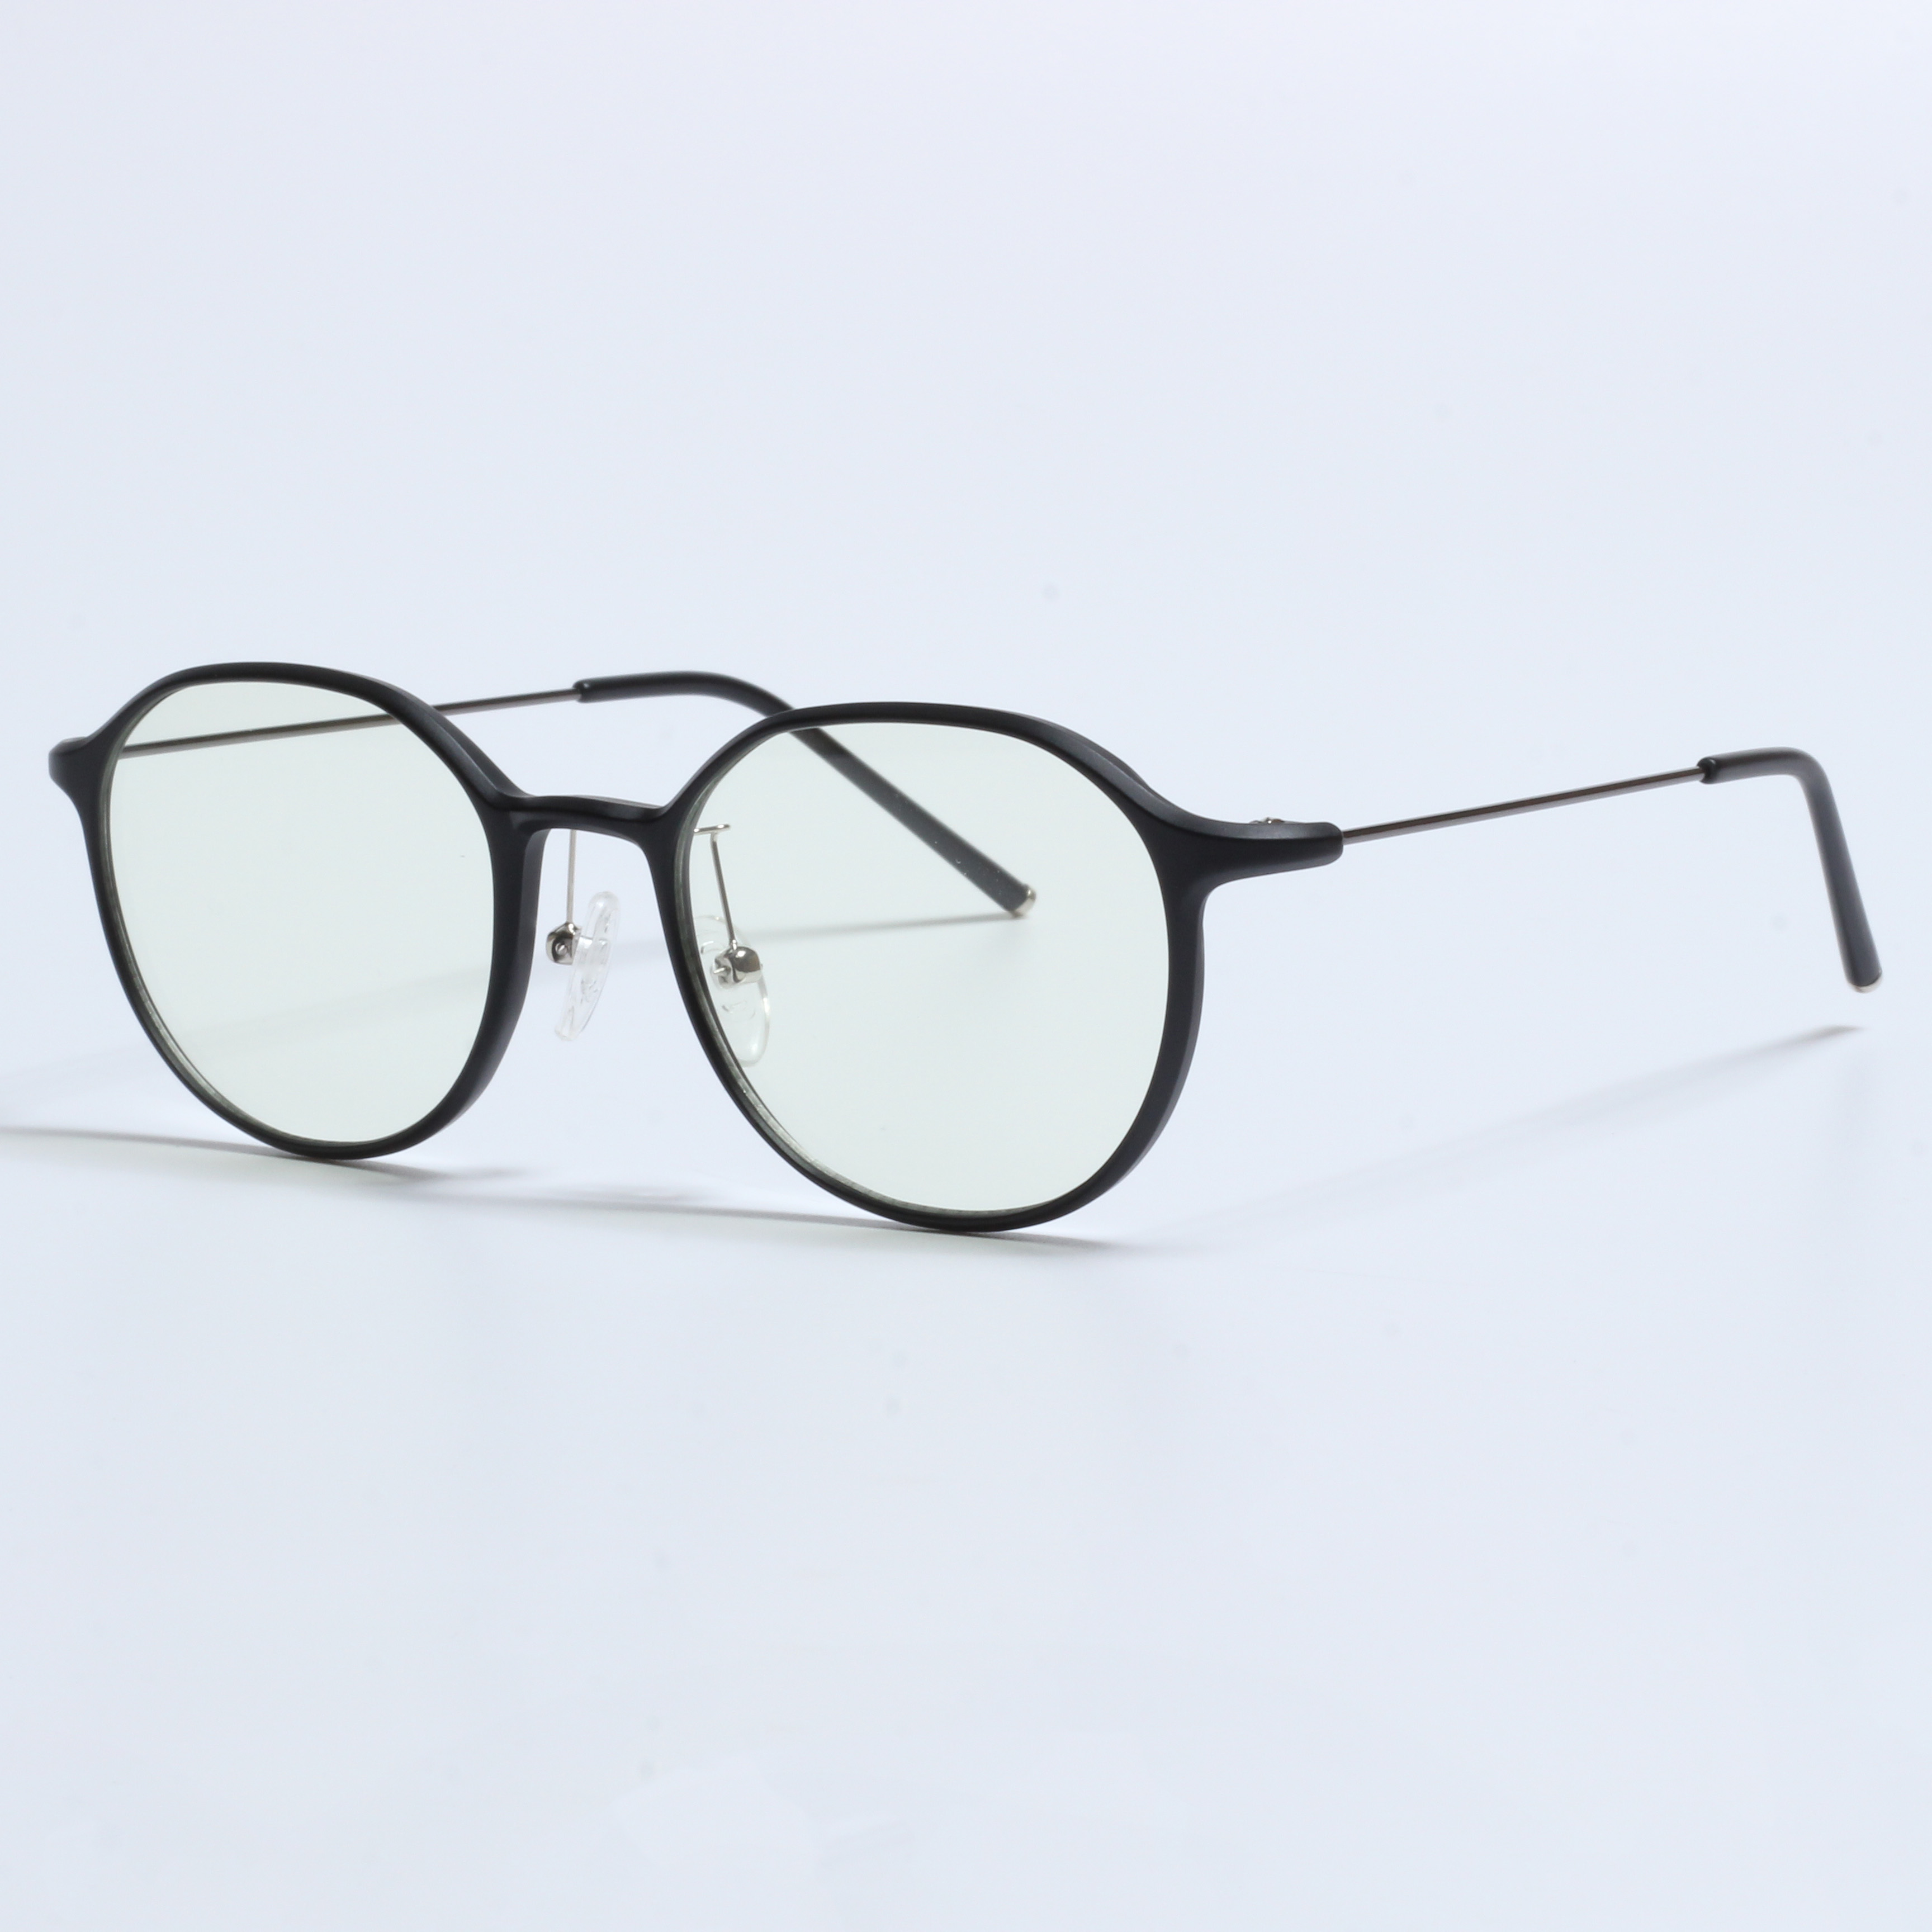 Vintage Thick Gafas Opticas De Hombres Transparent TR90 Frames (4)